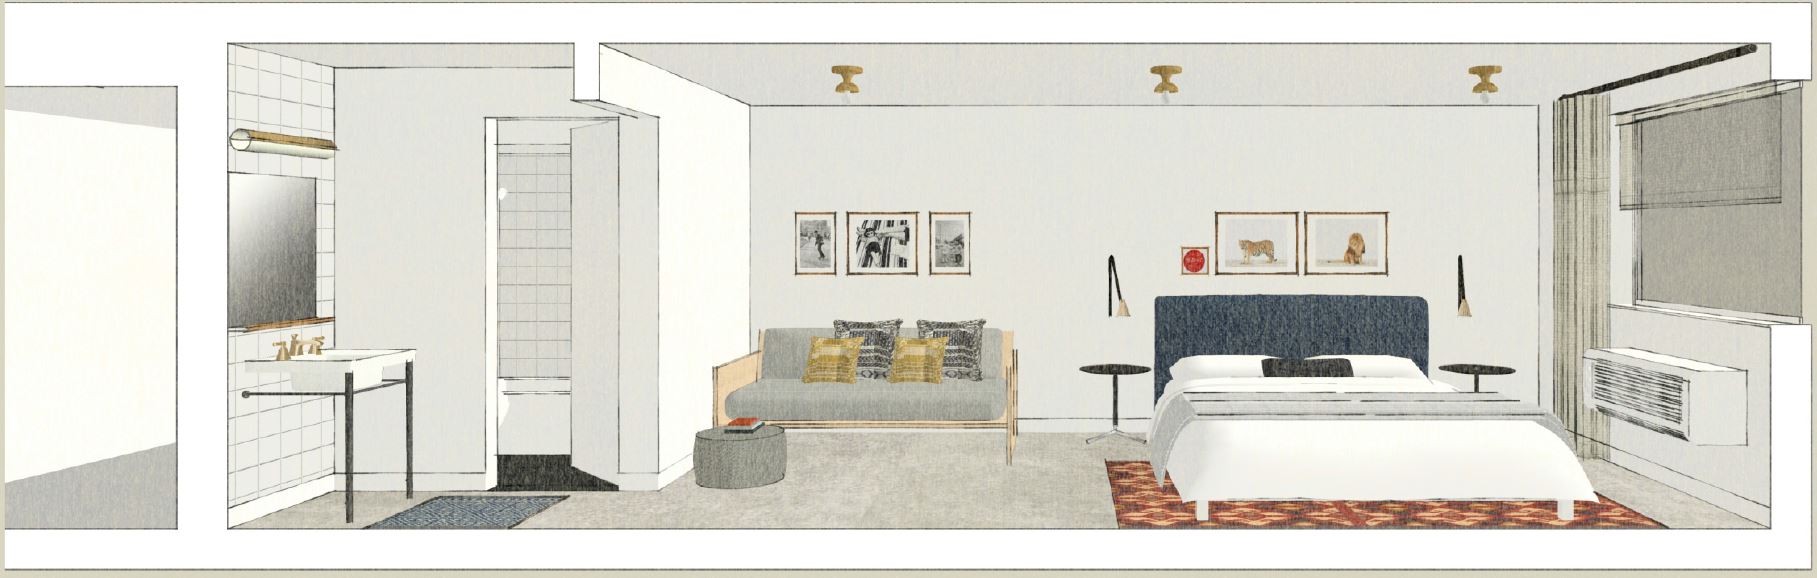 Trumbull & Porter room rendering